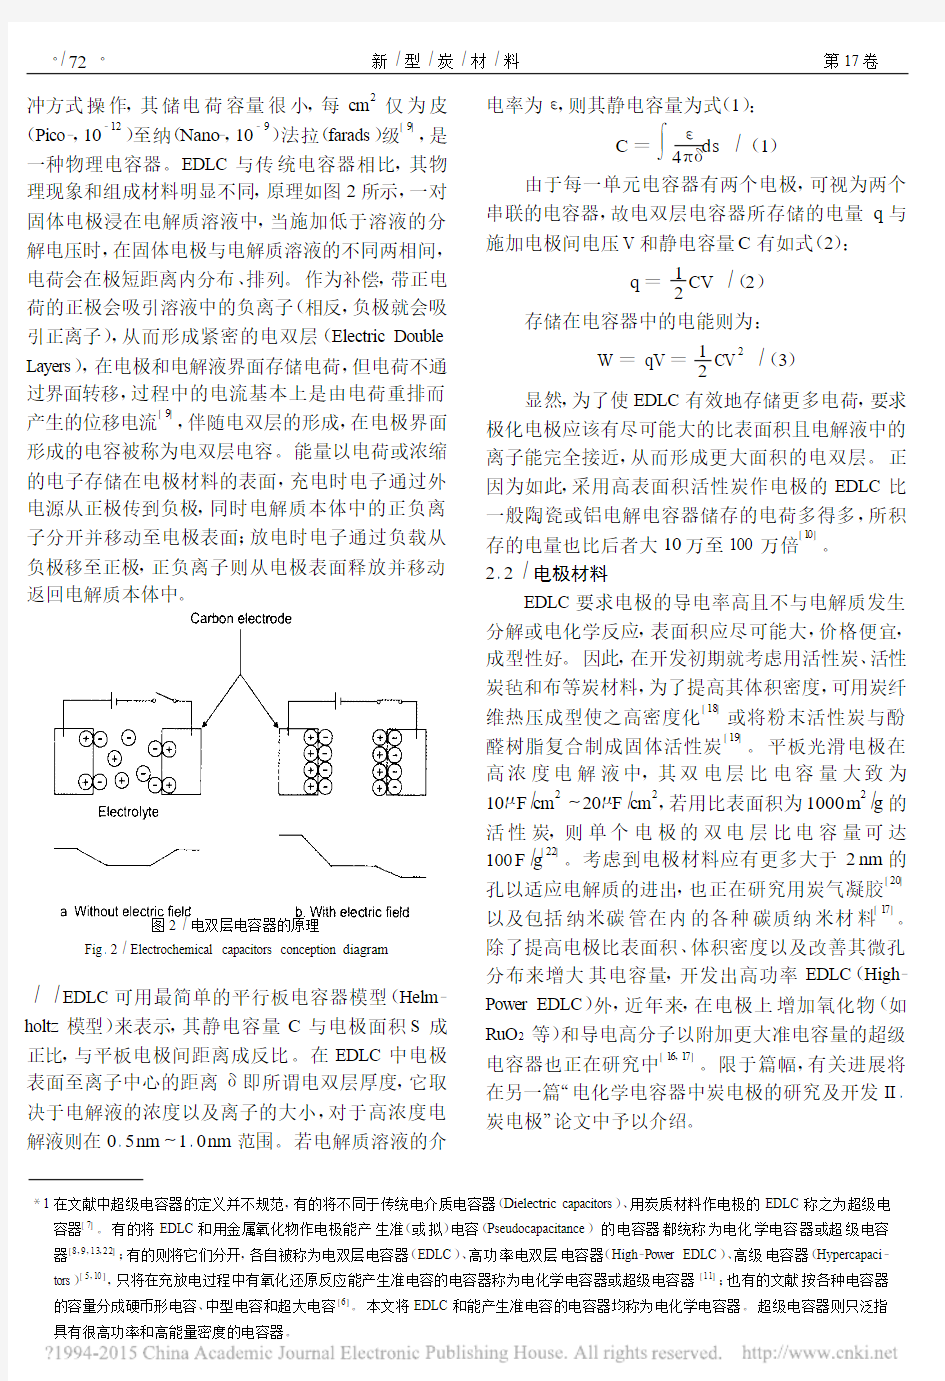 电化学电容器中炭电极的研究及开发I_电化学电容器_戴贵平